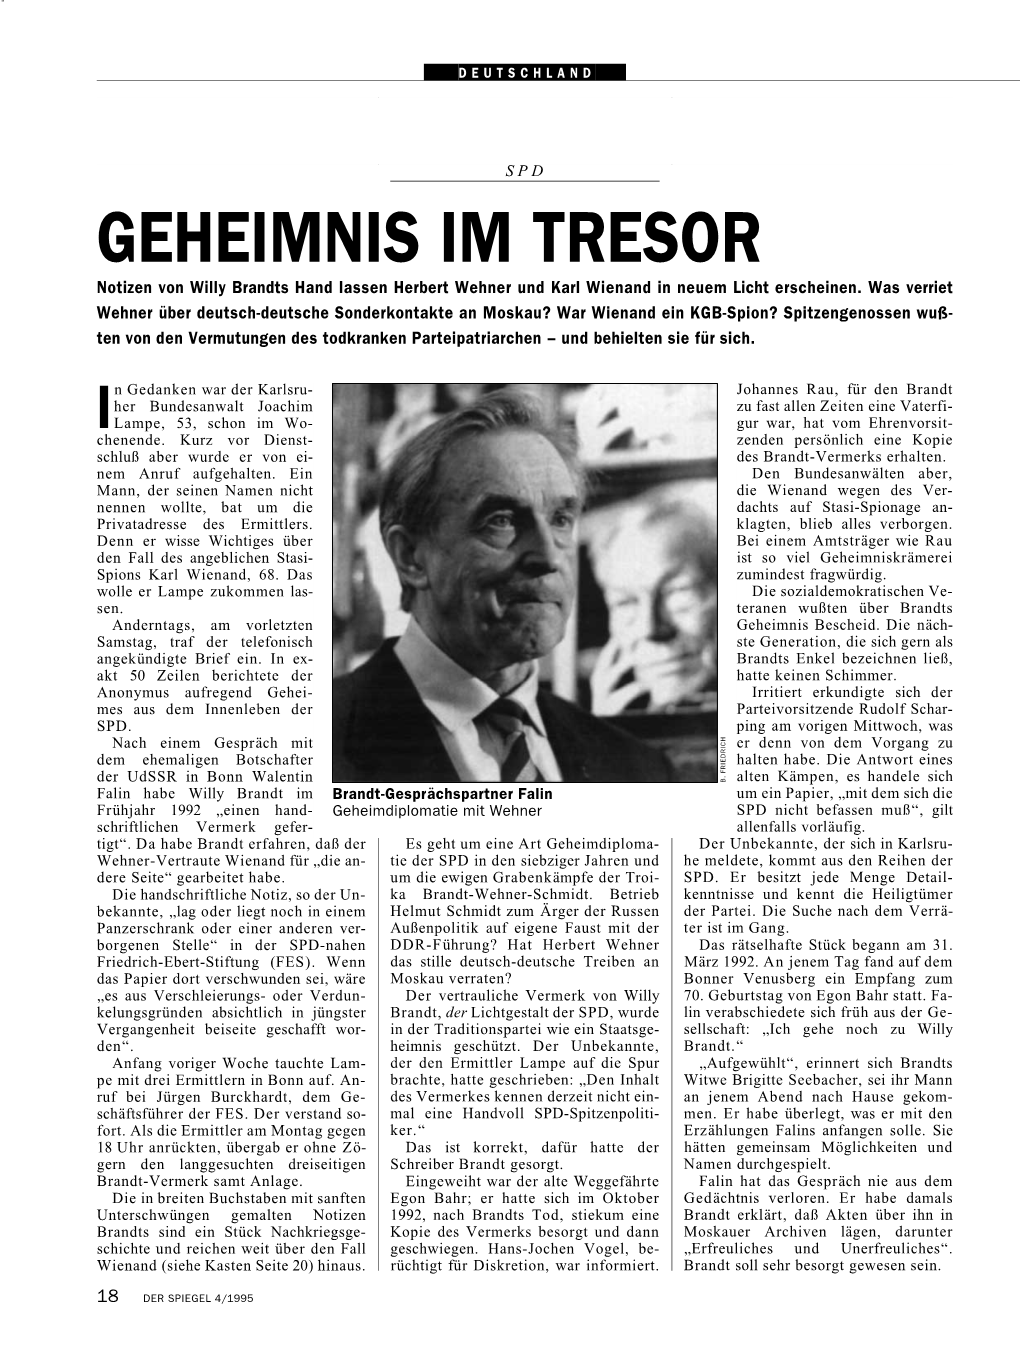 GEHEIMNIS IM TRESOR Notizen Von Willy Brandts Hand Lassen Herbert Wehner Und Karl Wienand in Neuem Licht Erscheinen